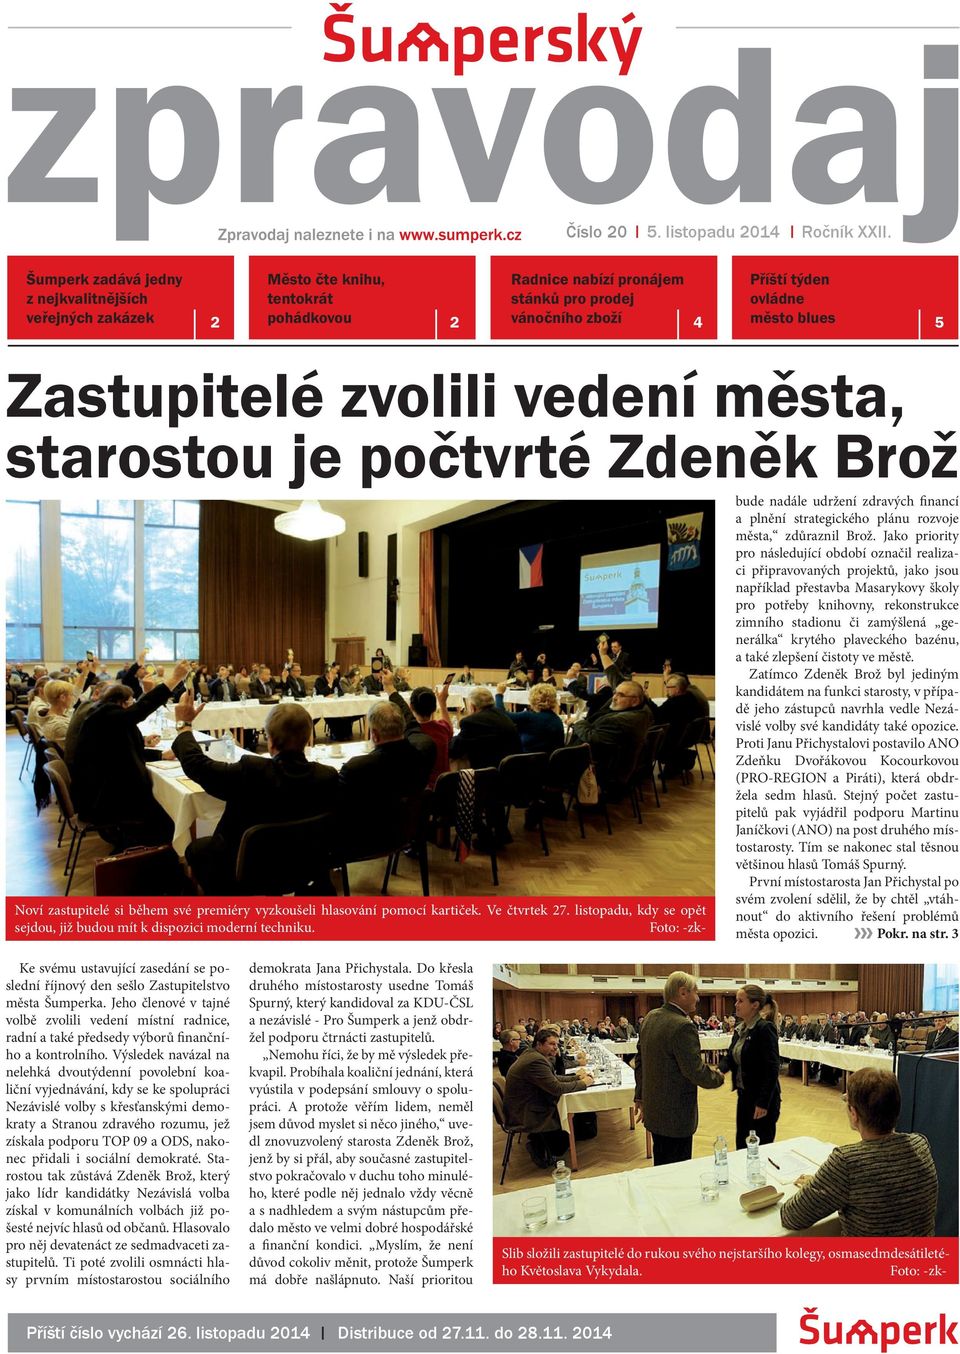 Zastupitelé zvolili vedení města, starostou je počtvrté Zdeněk Brož - PDF  Free Download